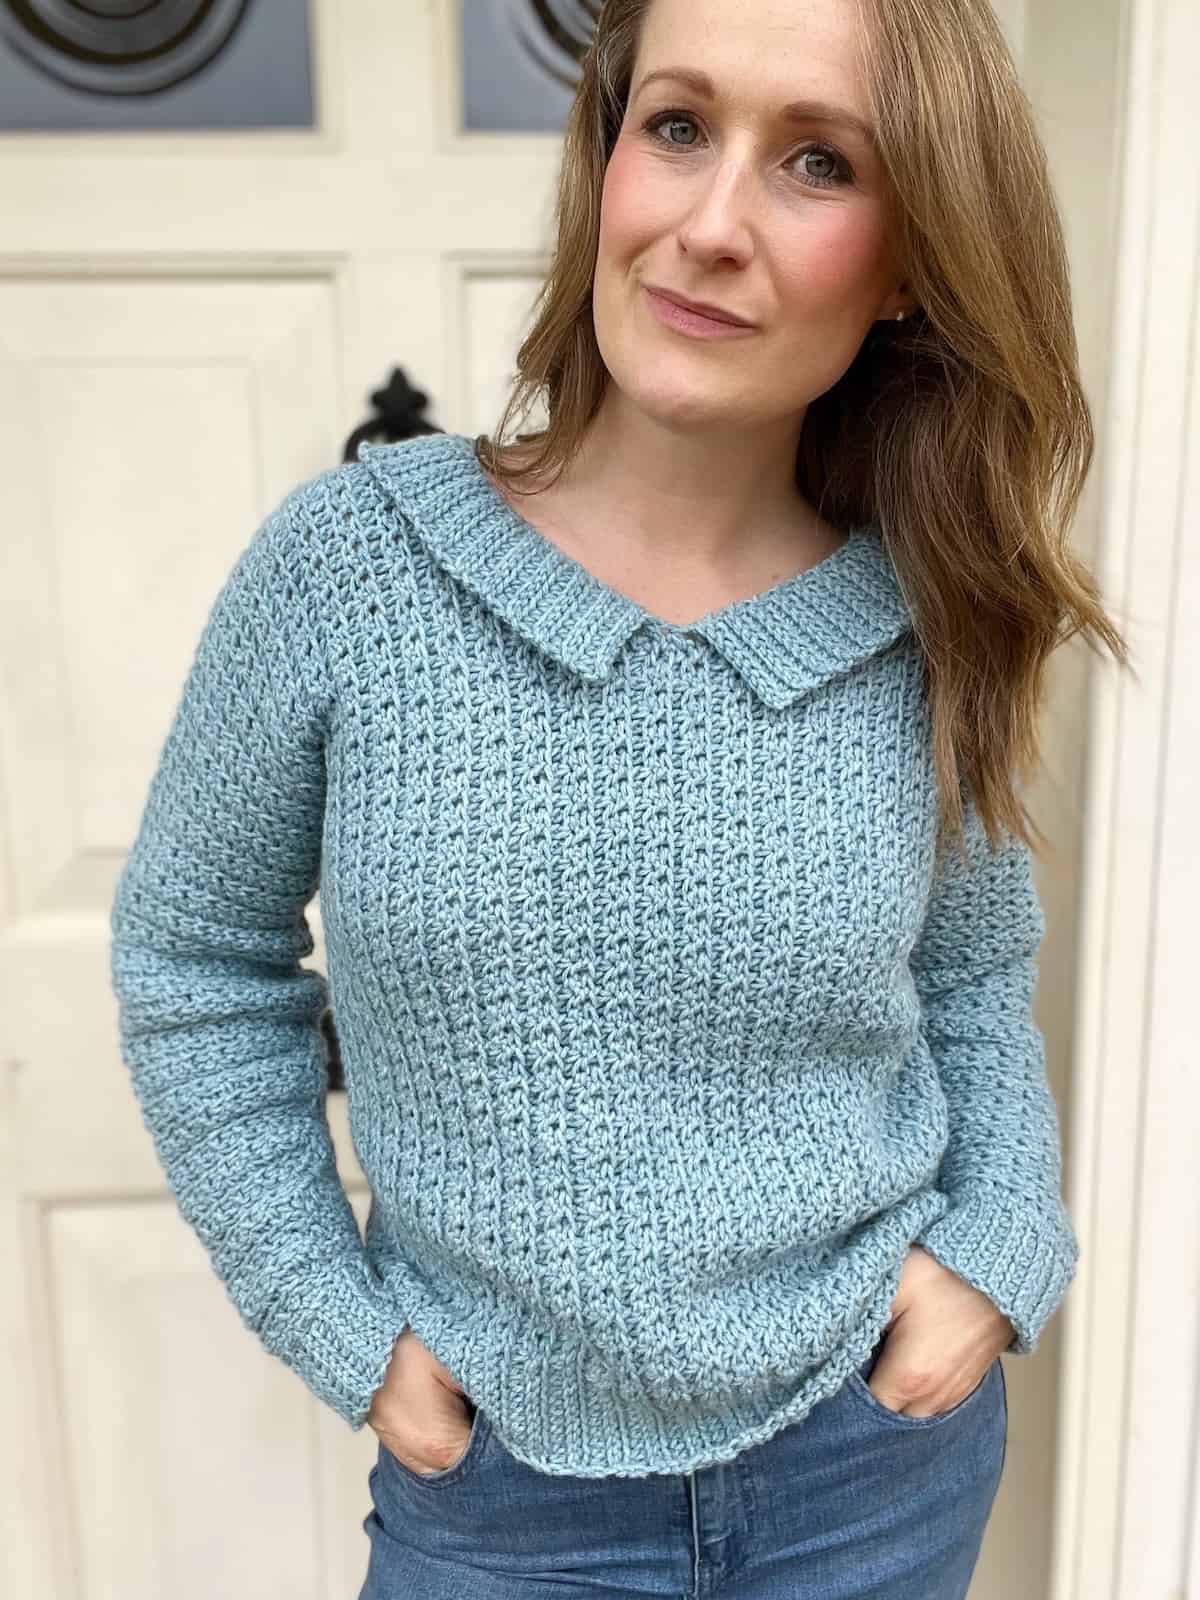 Easy one piece crochet sweater pattern